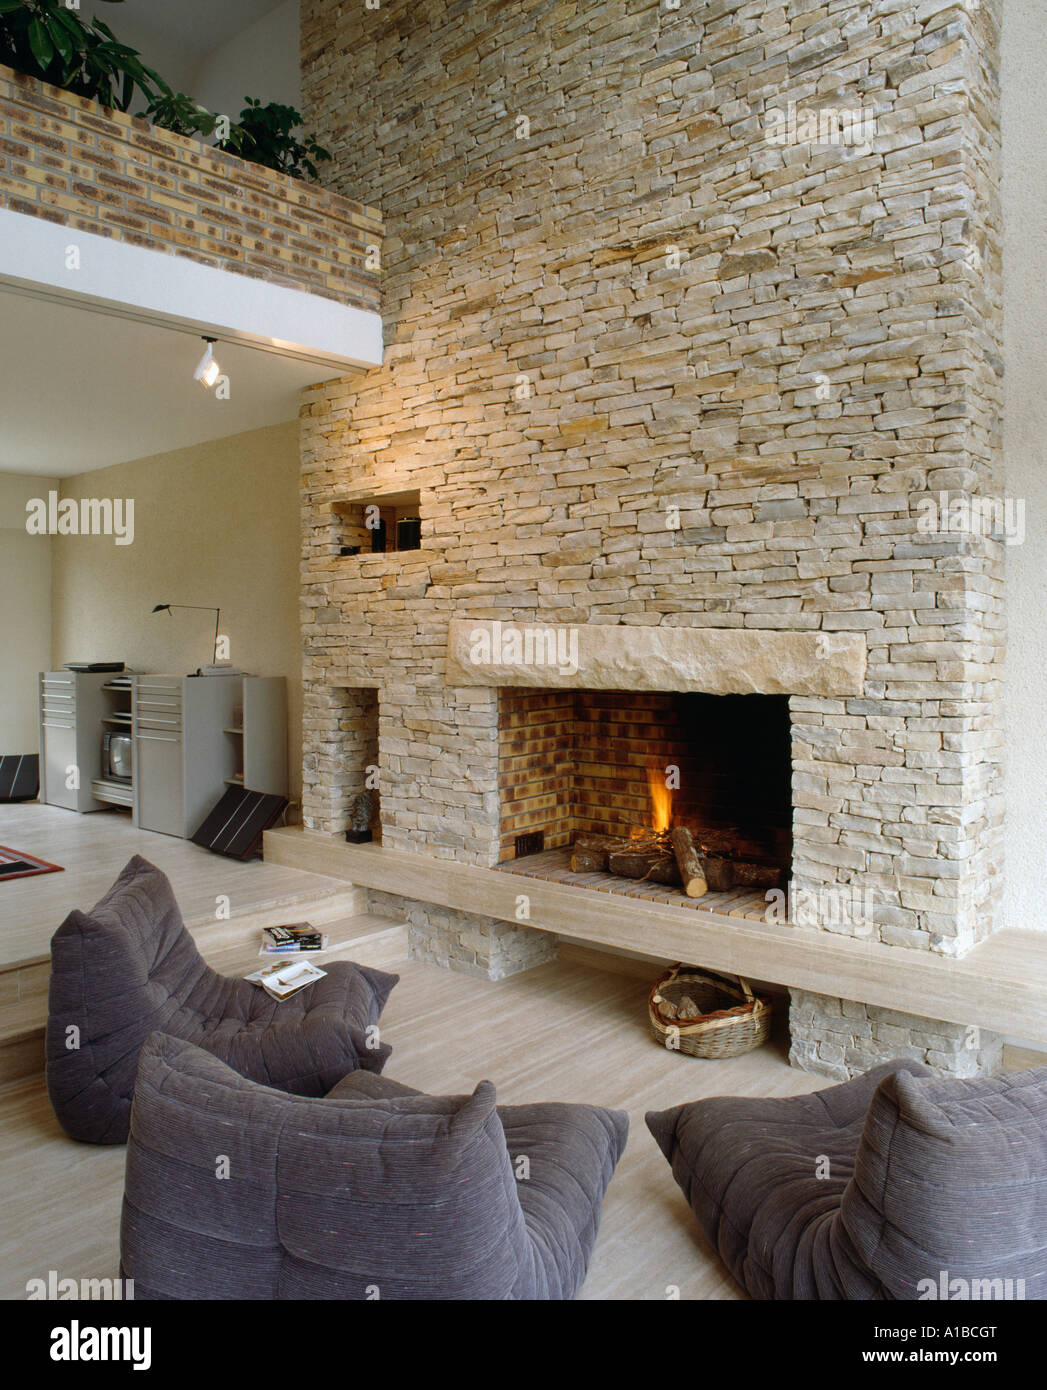 Brennenden Feuer im Kamin in Steinwand umgebaute Scheune, mit modernen  grauen Sessel Stockfotografie - Alamy